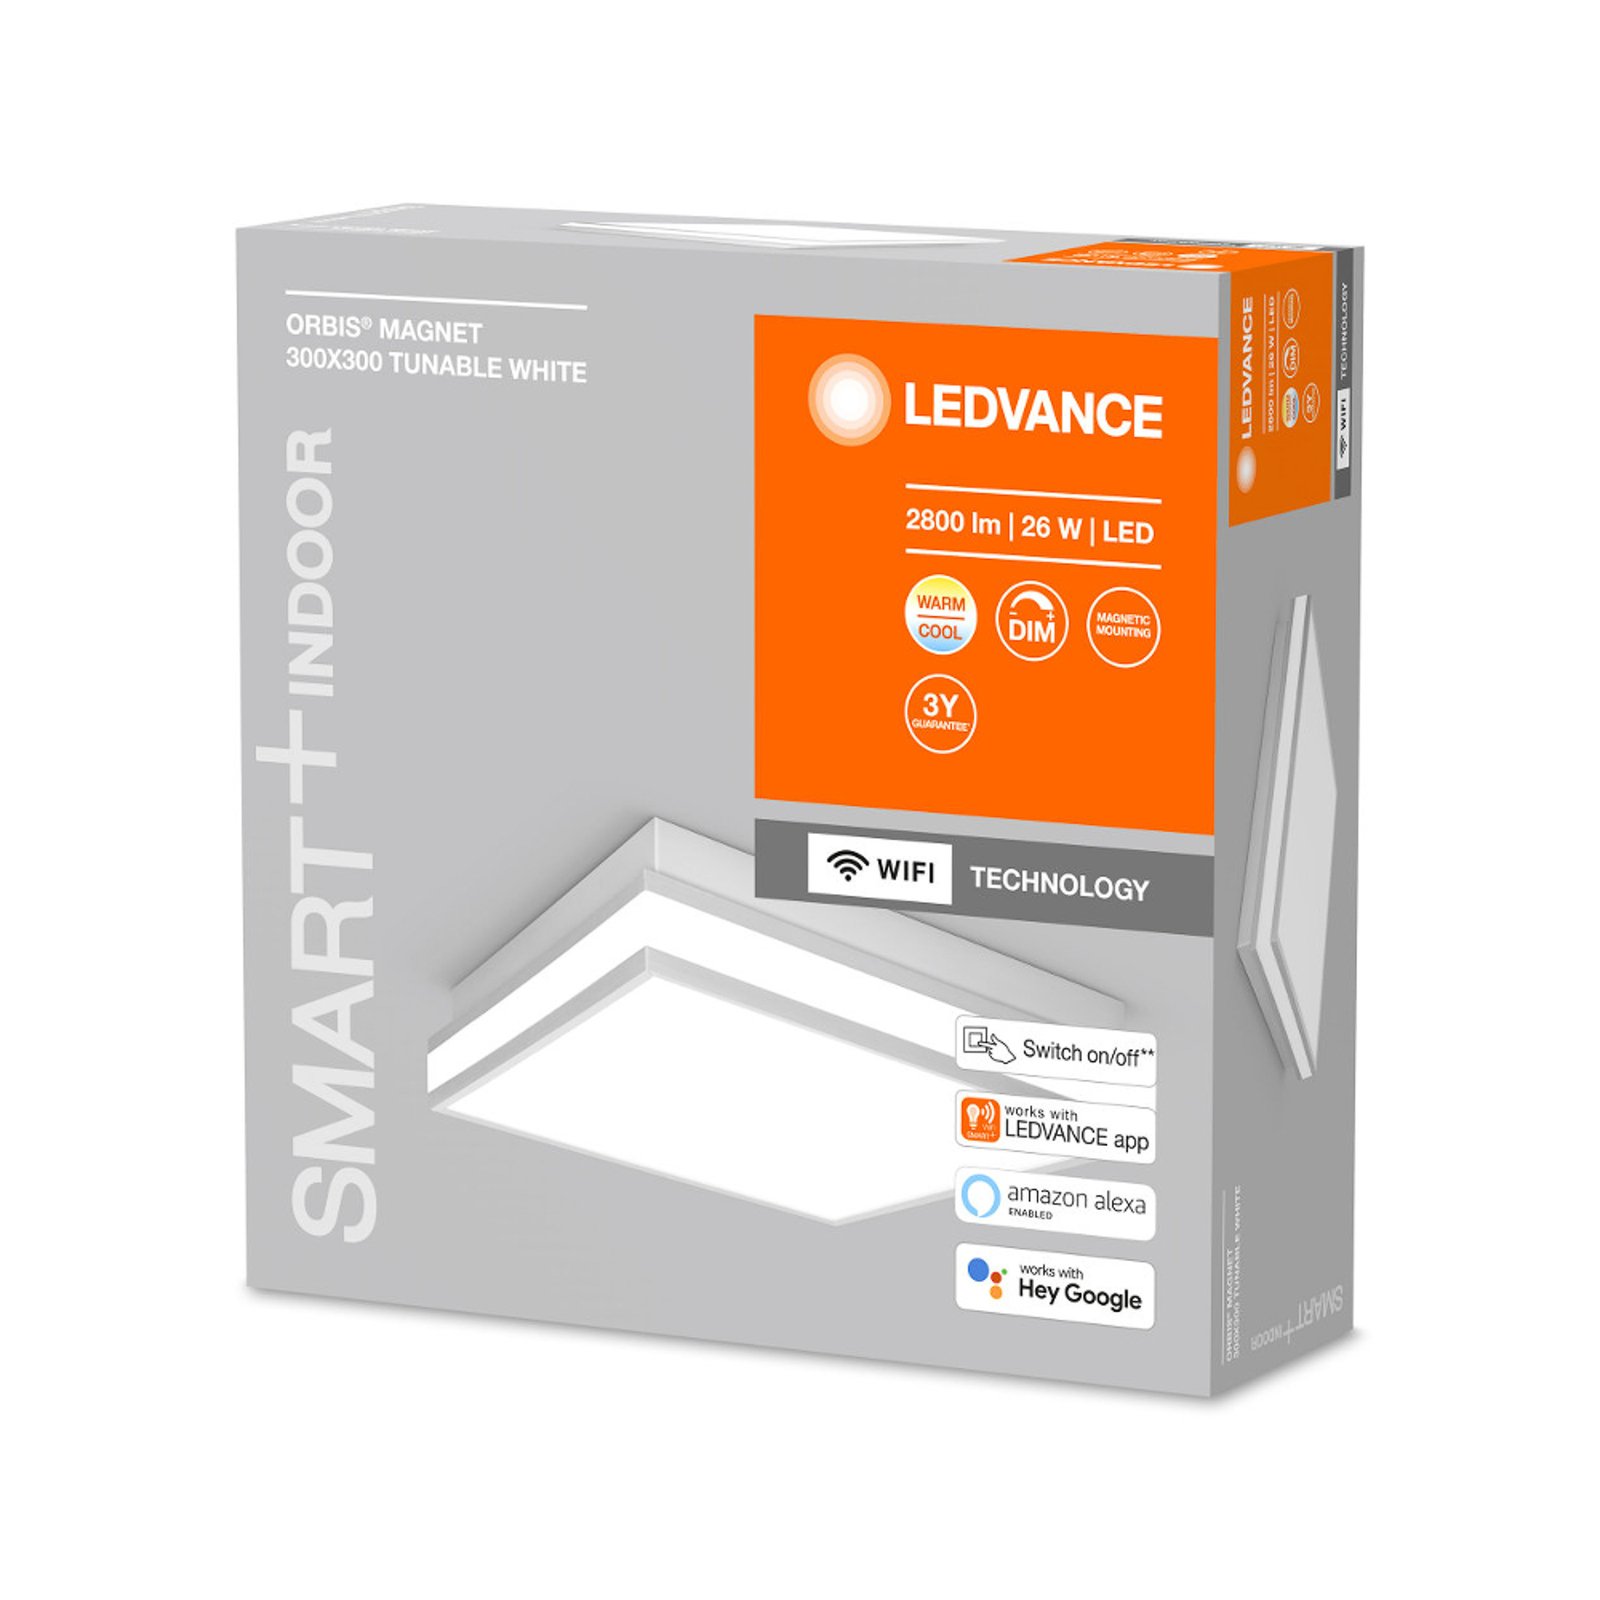 LEDVANCE SMART+ WiFi Orbis Magnet gris, 30x30cm